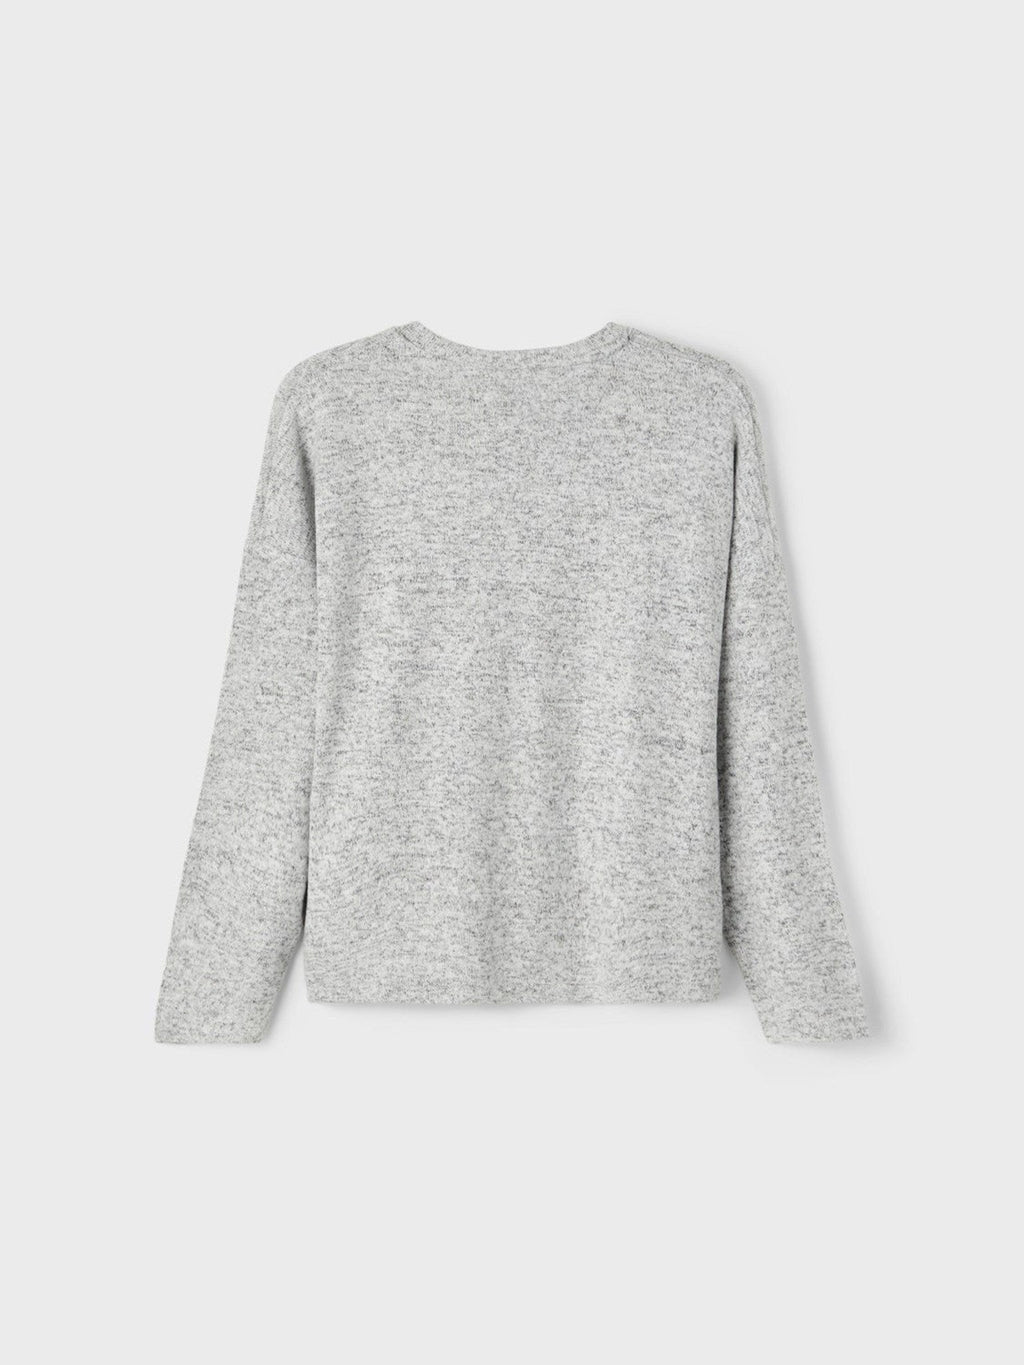 Sweaters Victi Knit - Gris Melange